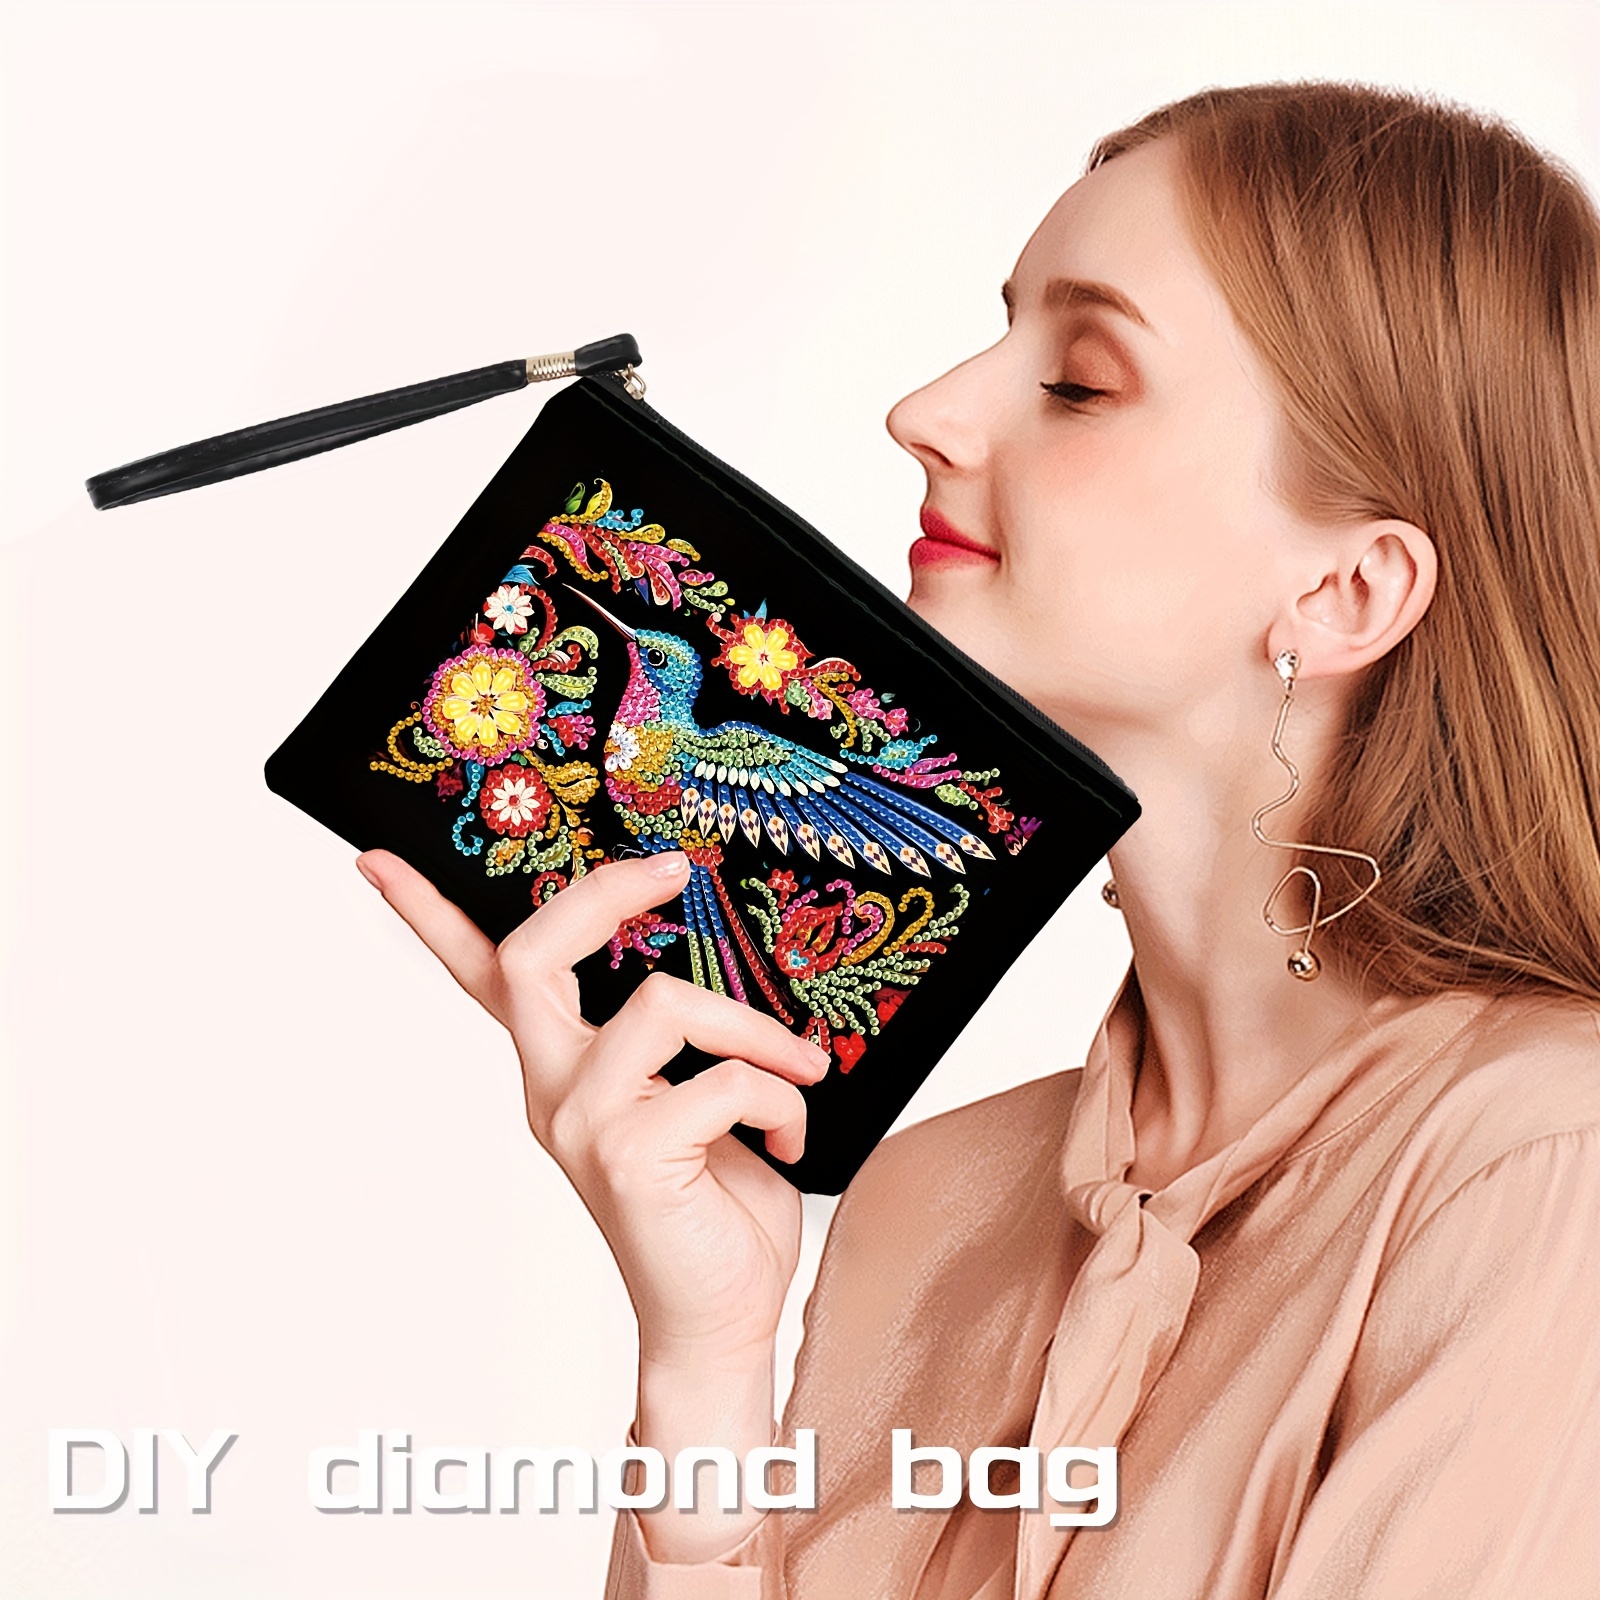 

5d Diamond Painting Purses, Diy Colorful Bird Diamond Painting Handbag Diamond Art Wristlet Clutch Bag For Makeup Gift